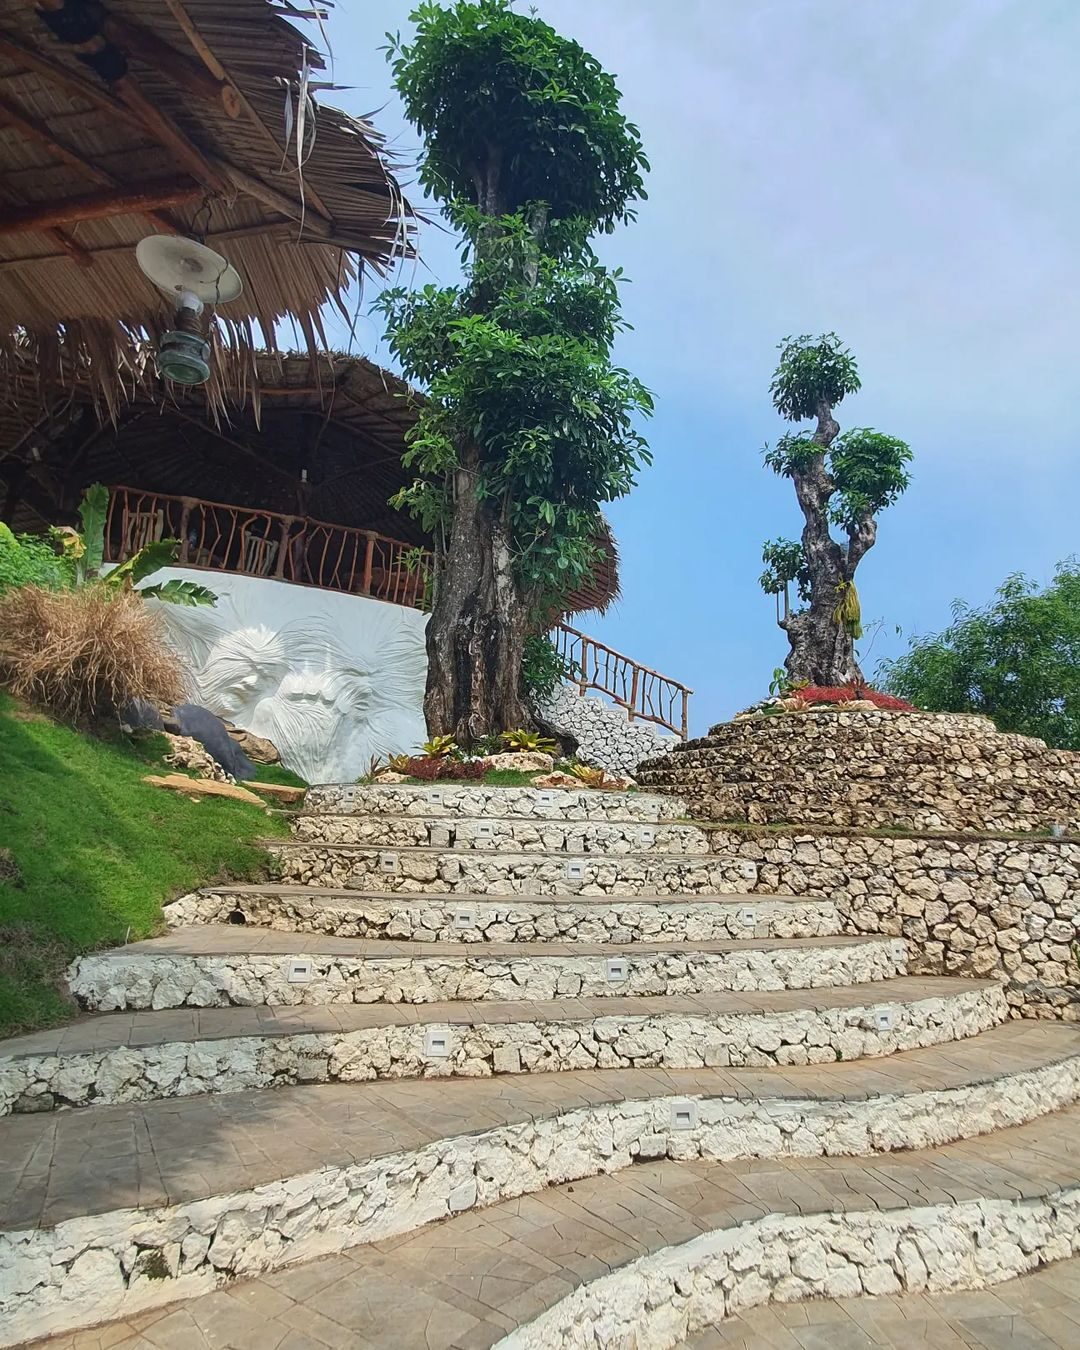 Lokasi Ama Awa Resort Jogja Image From @rismayodia